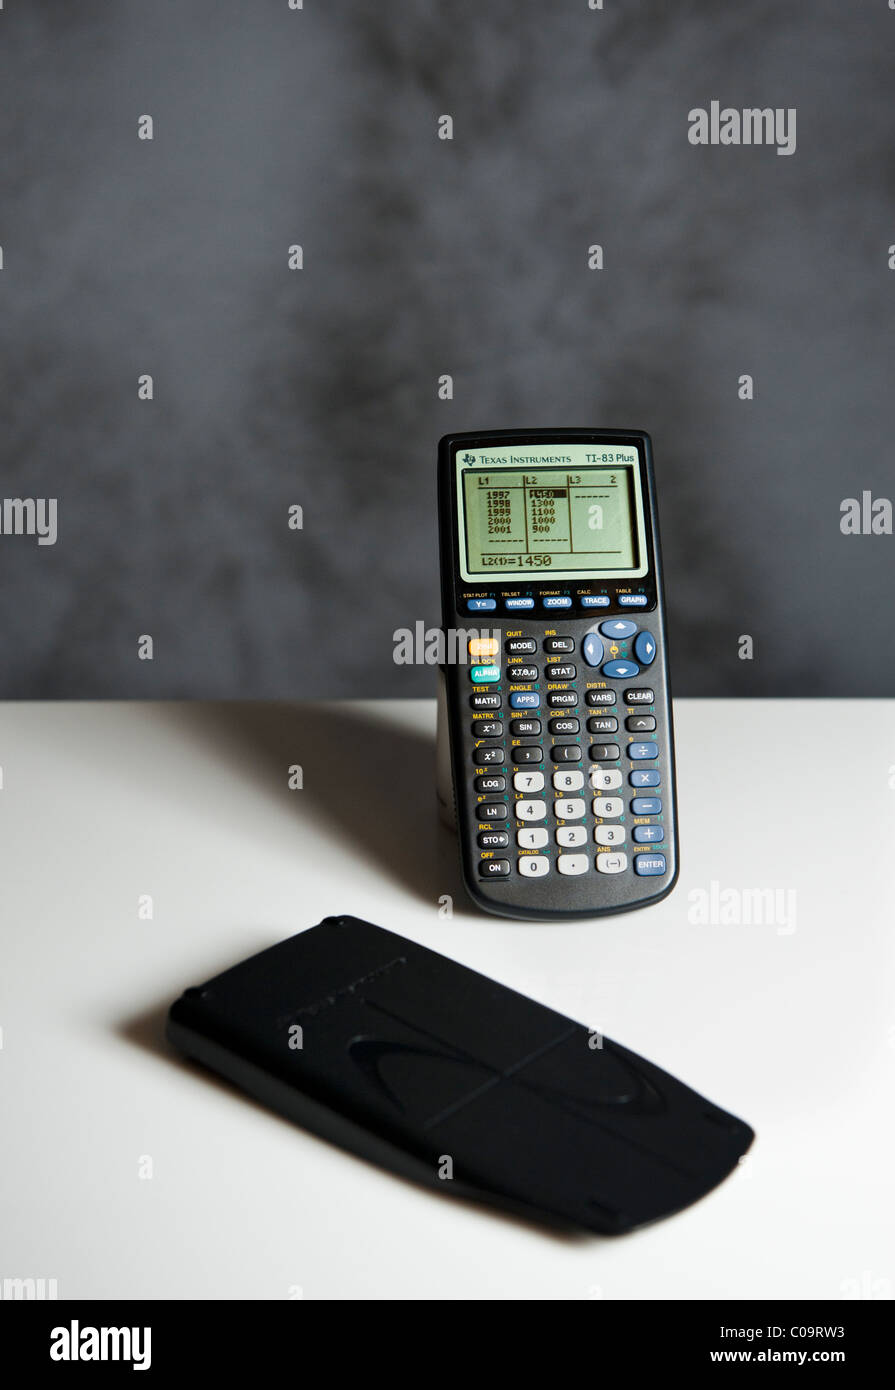 Calculatrice graphique Banque de photographies et d'images à haute  résolution - Alamy